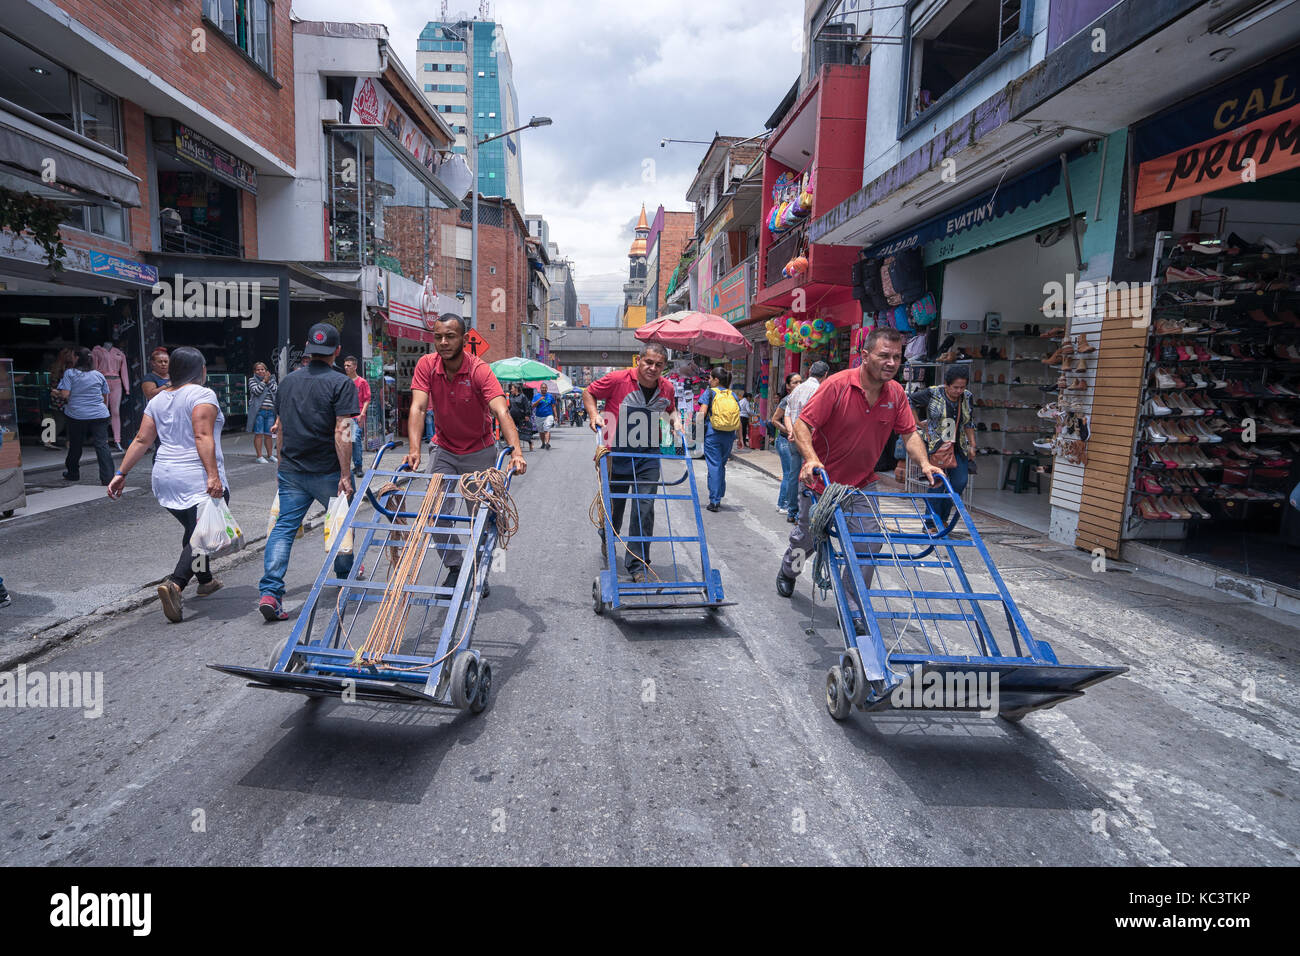 26 septembre 2017 Medellin, Colombie : les hommes poussant un chariot vide livraison dans la rue dans le centre de la ville Banque D'Images